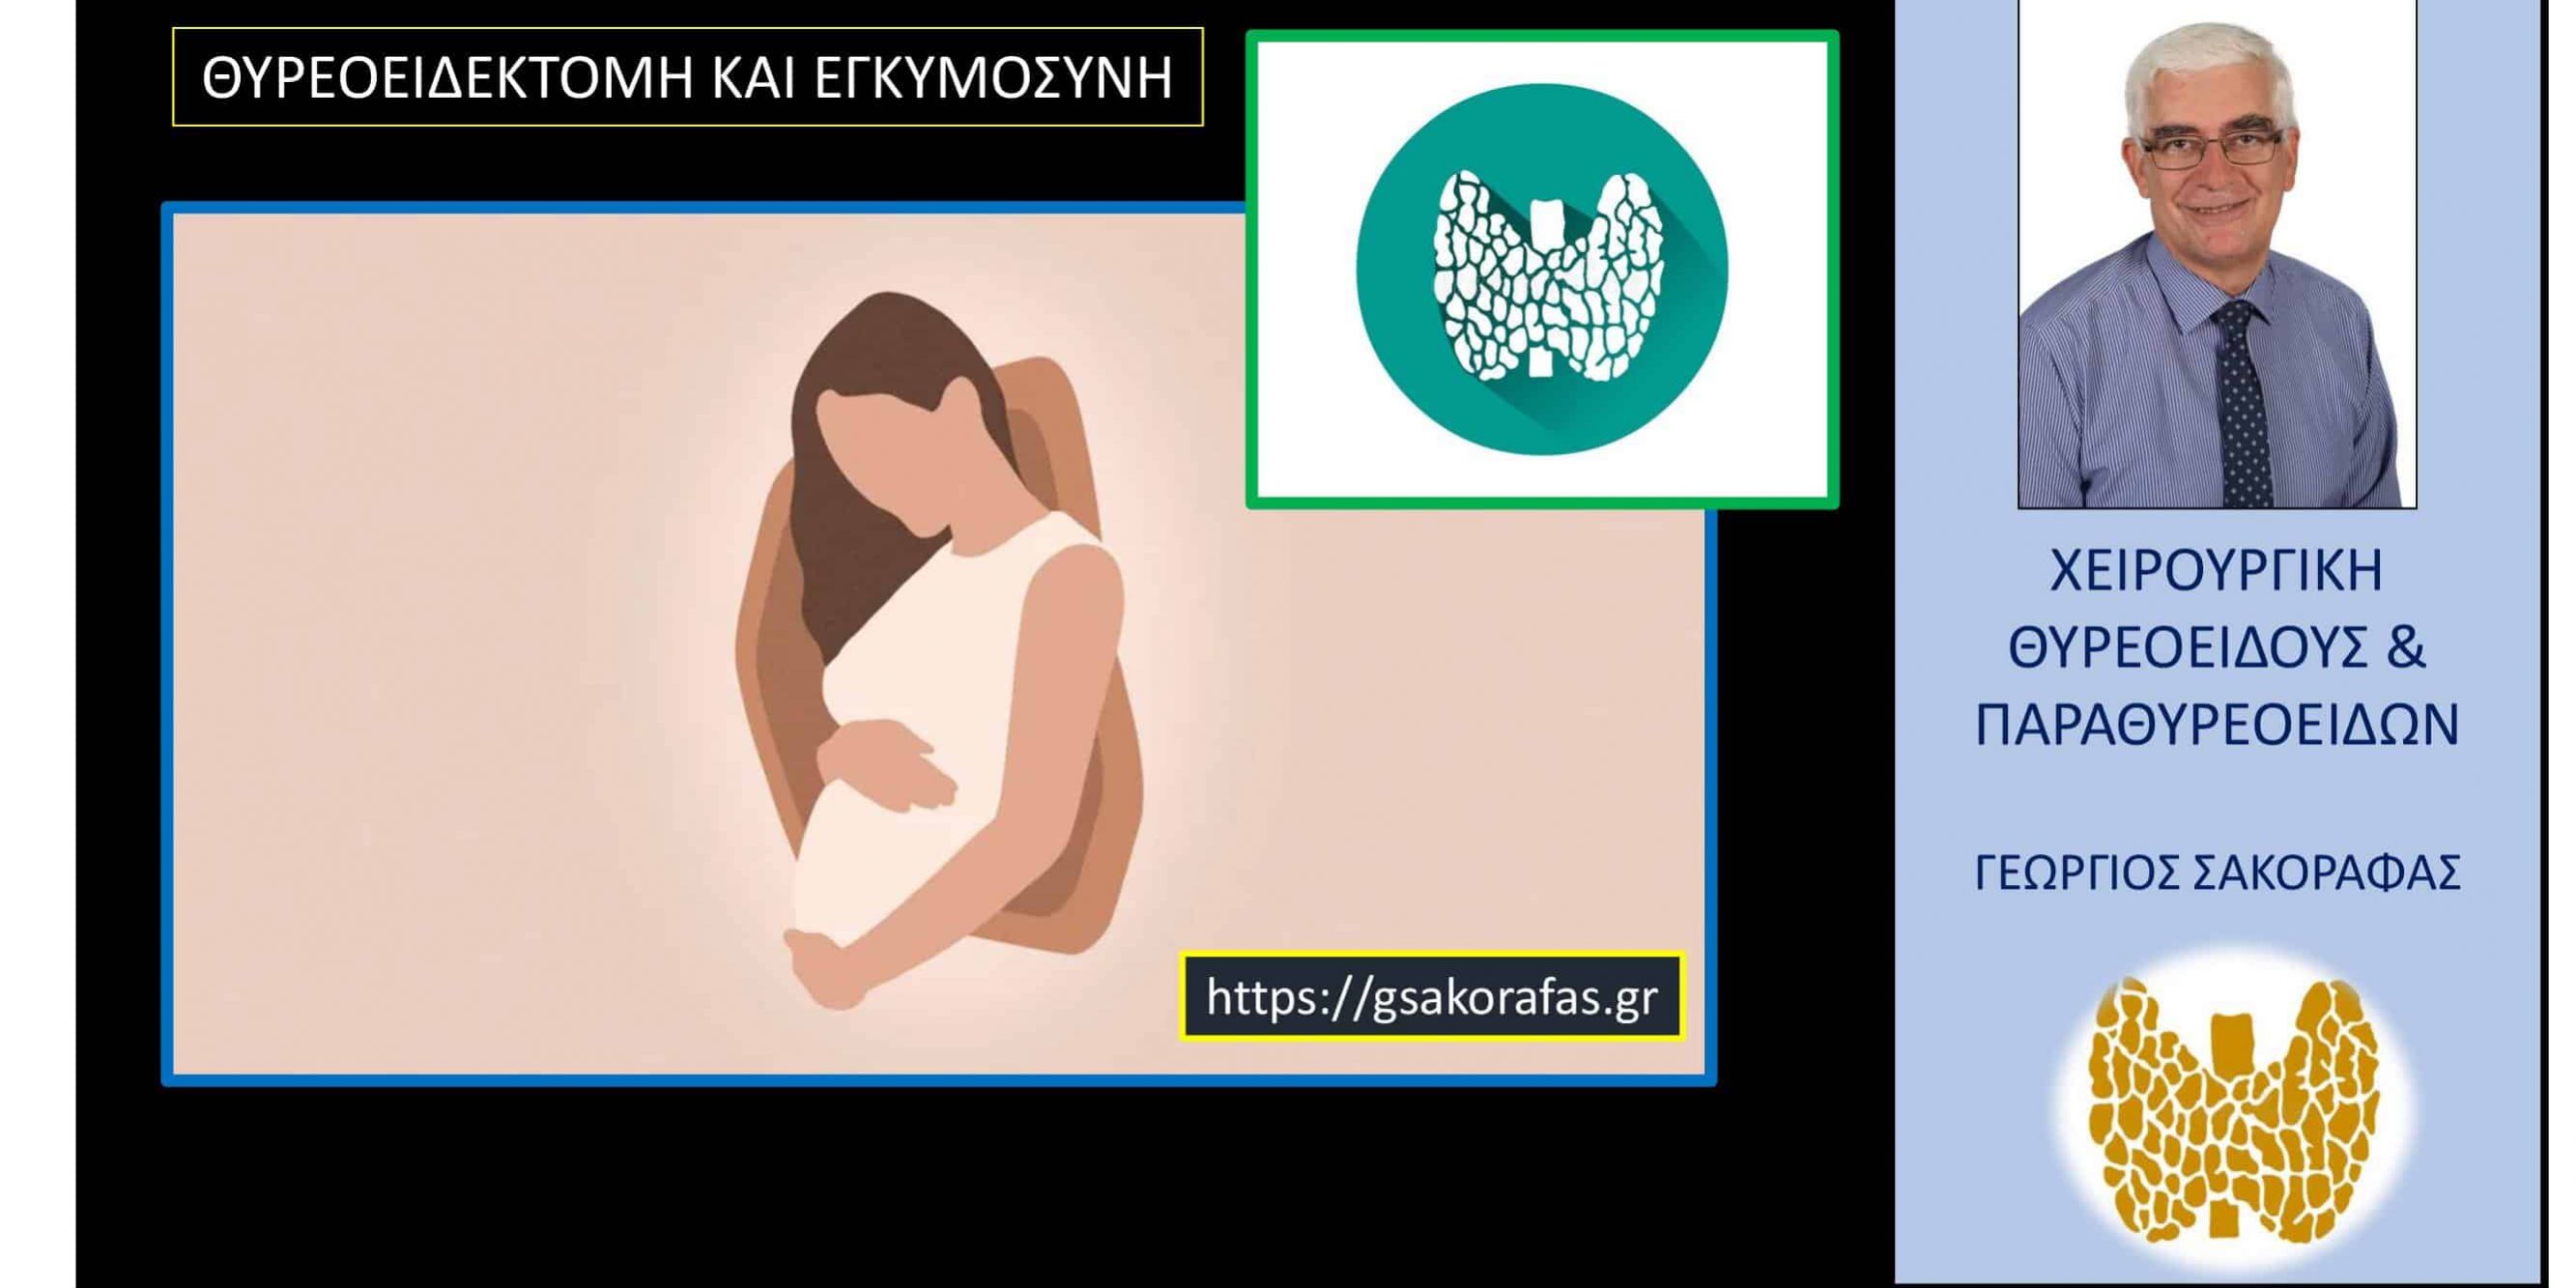 Θυρεοειδεκτομή και εγκυμοσύνη